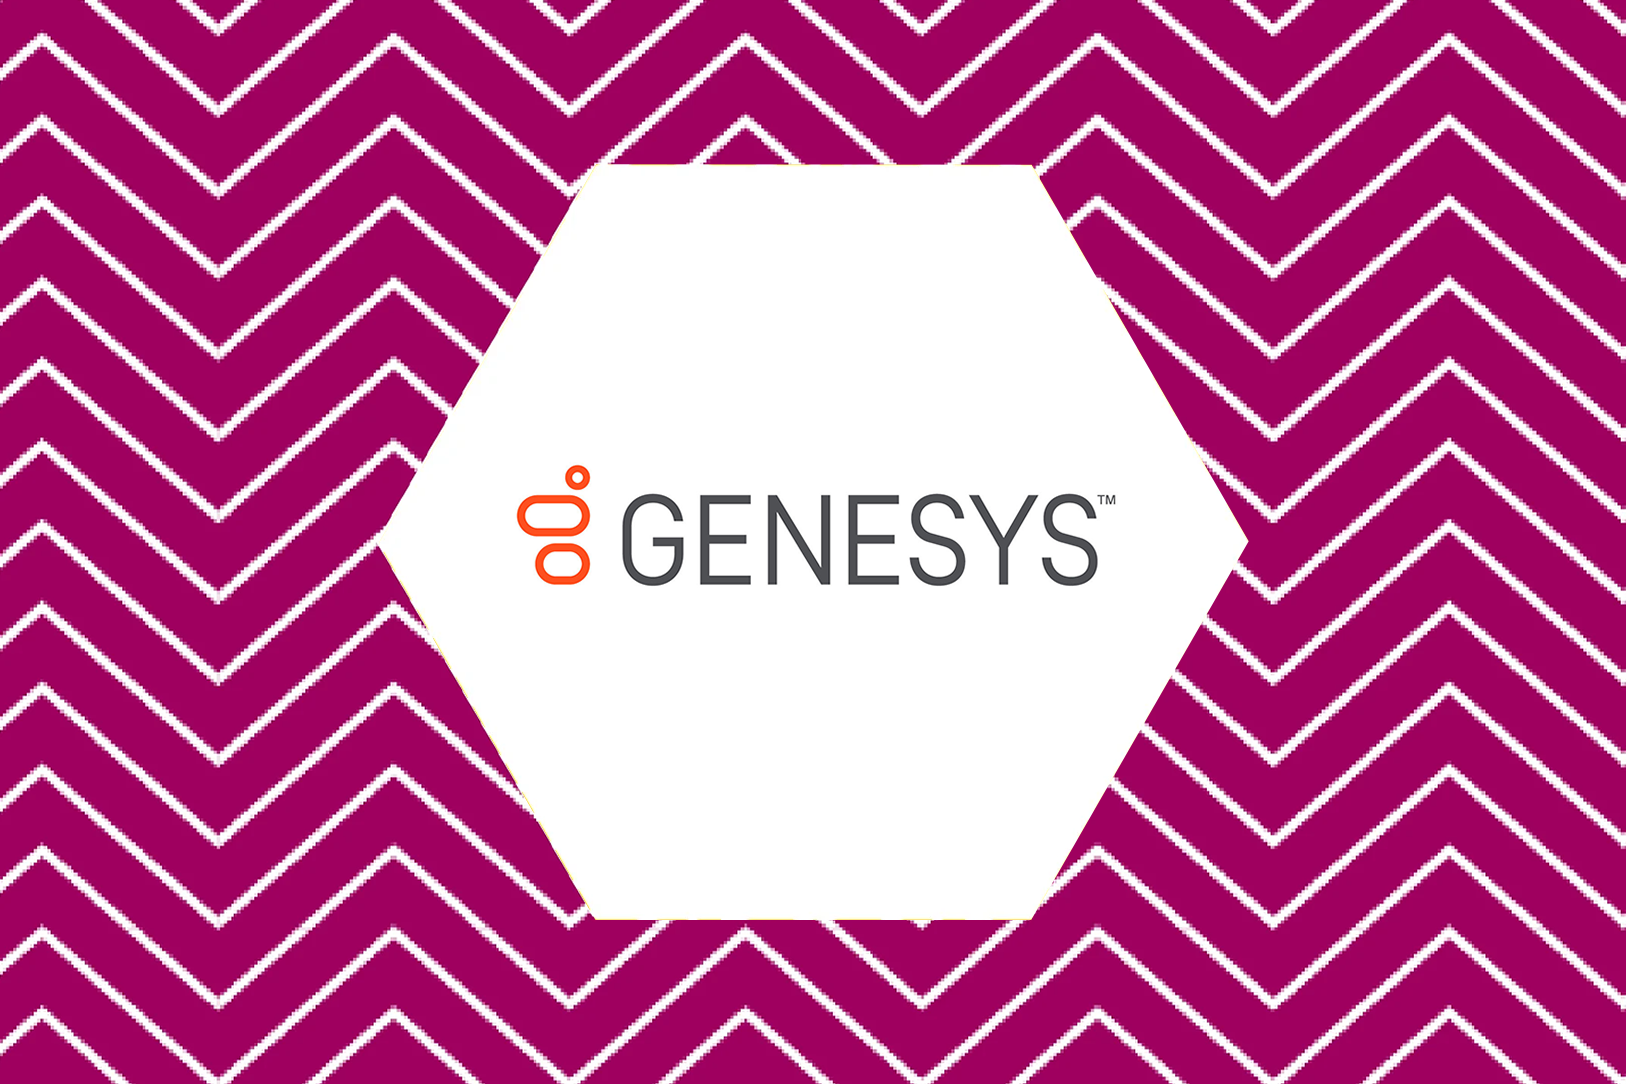 Genesys Website Case Study Image Resized (Smaller)